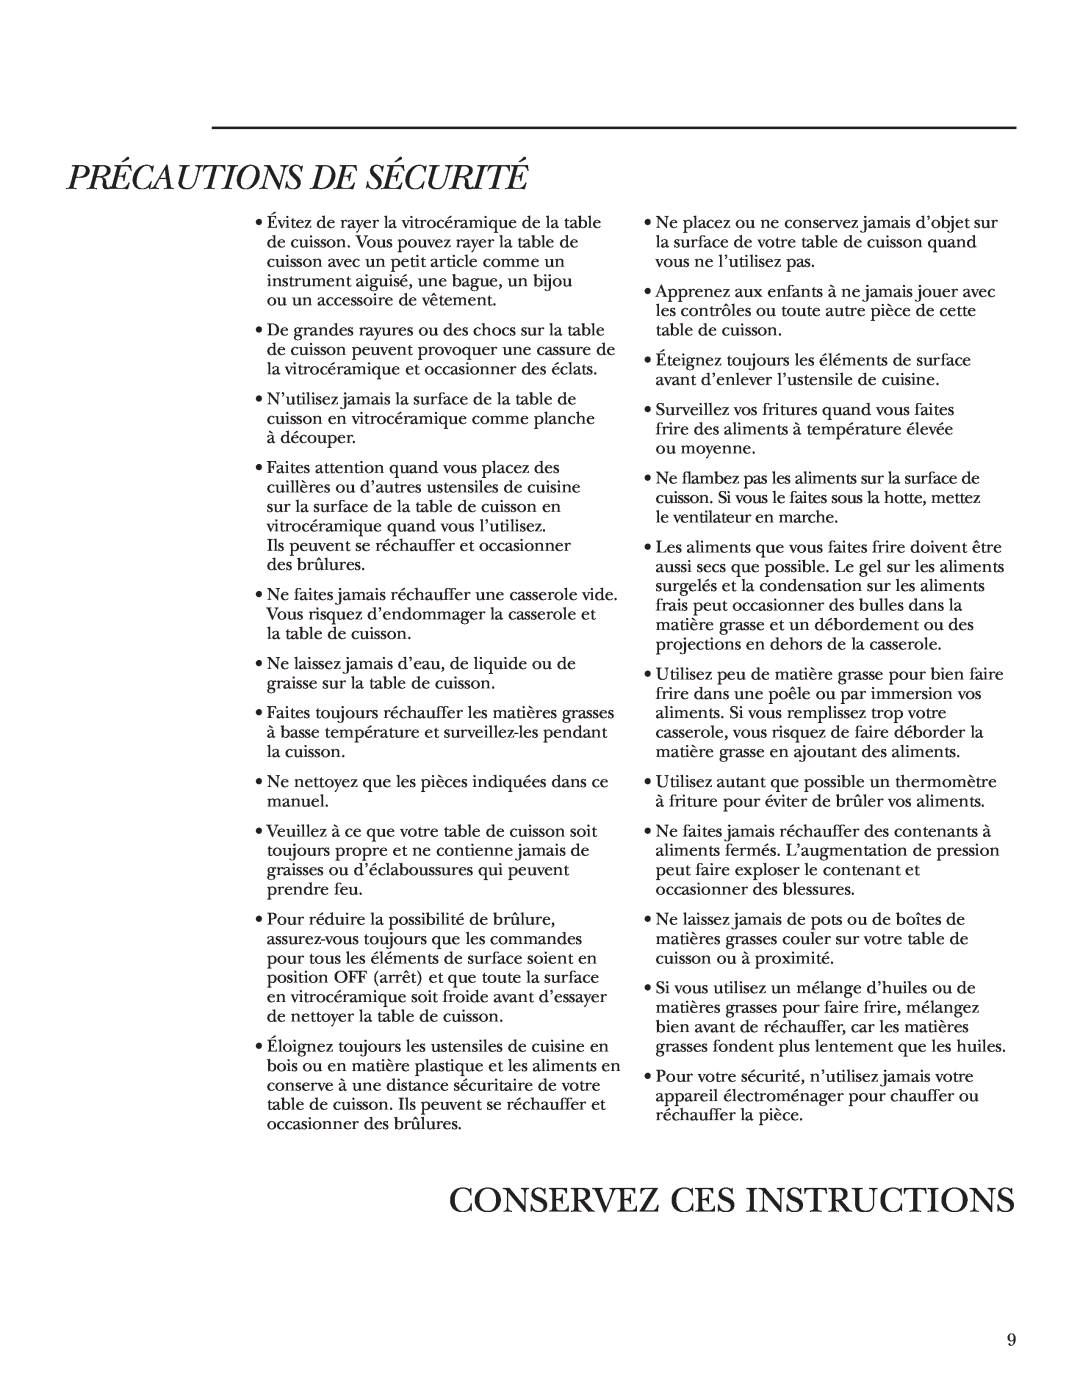 GE Monogram ZEU36K owner manual Conservez Ces Instructions, Précautions De Sécurité 